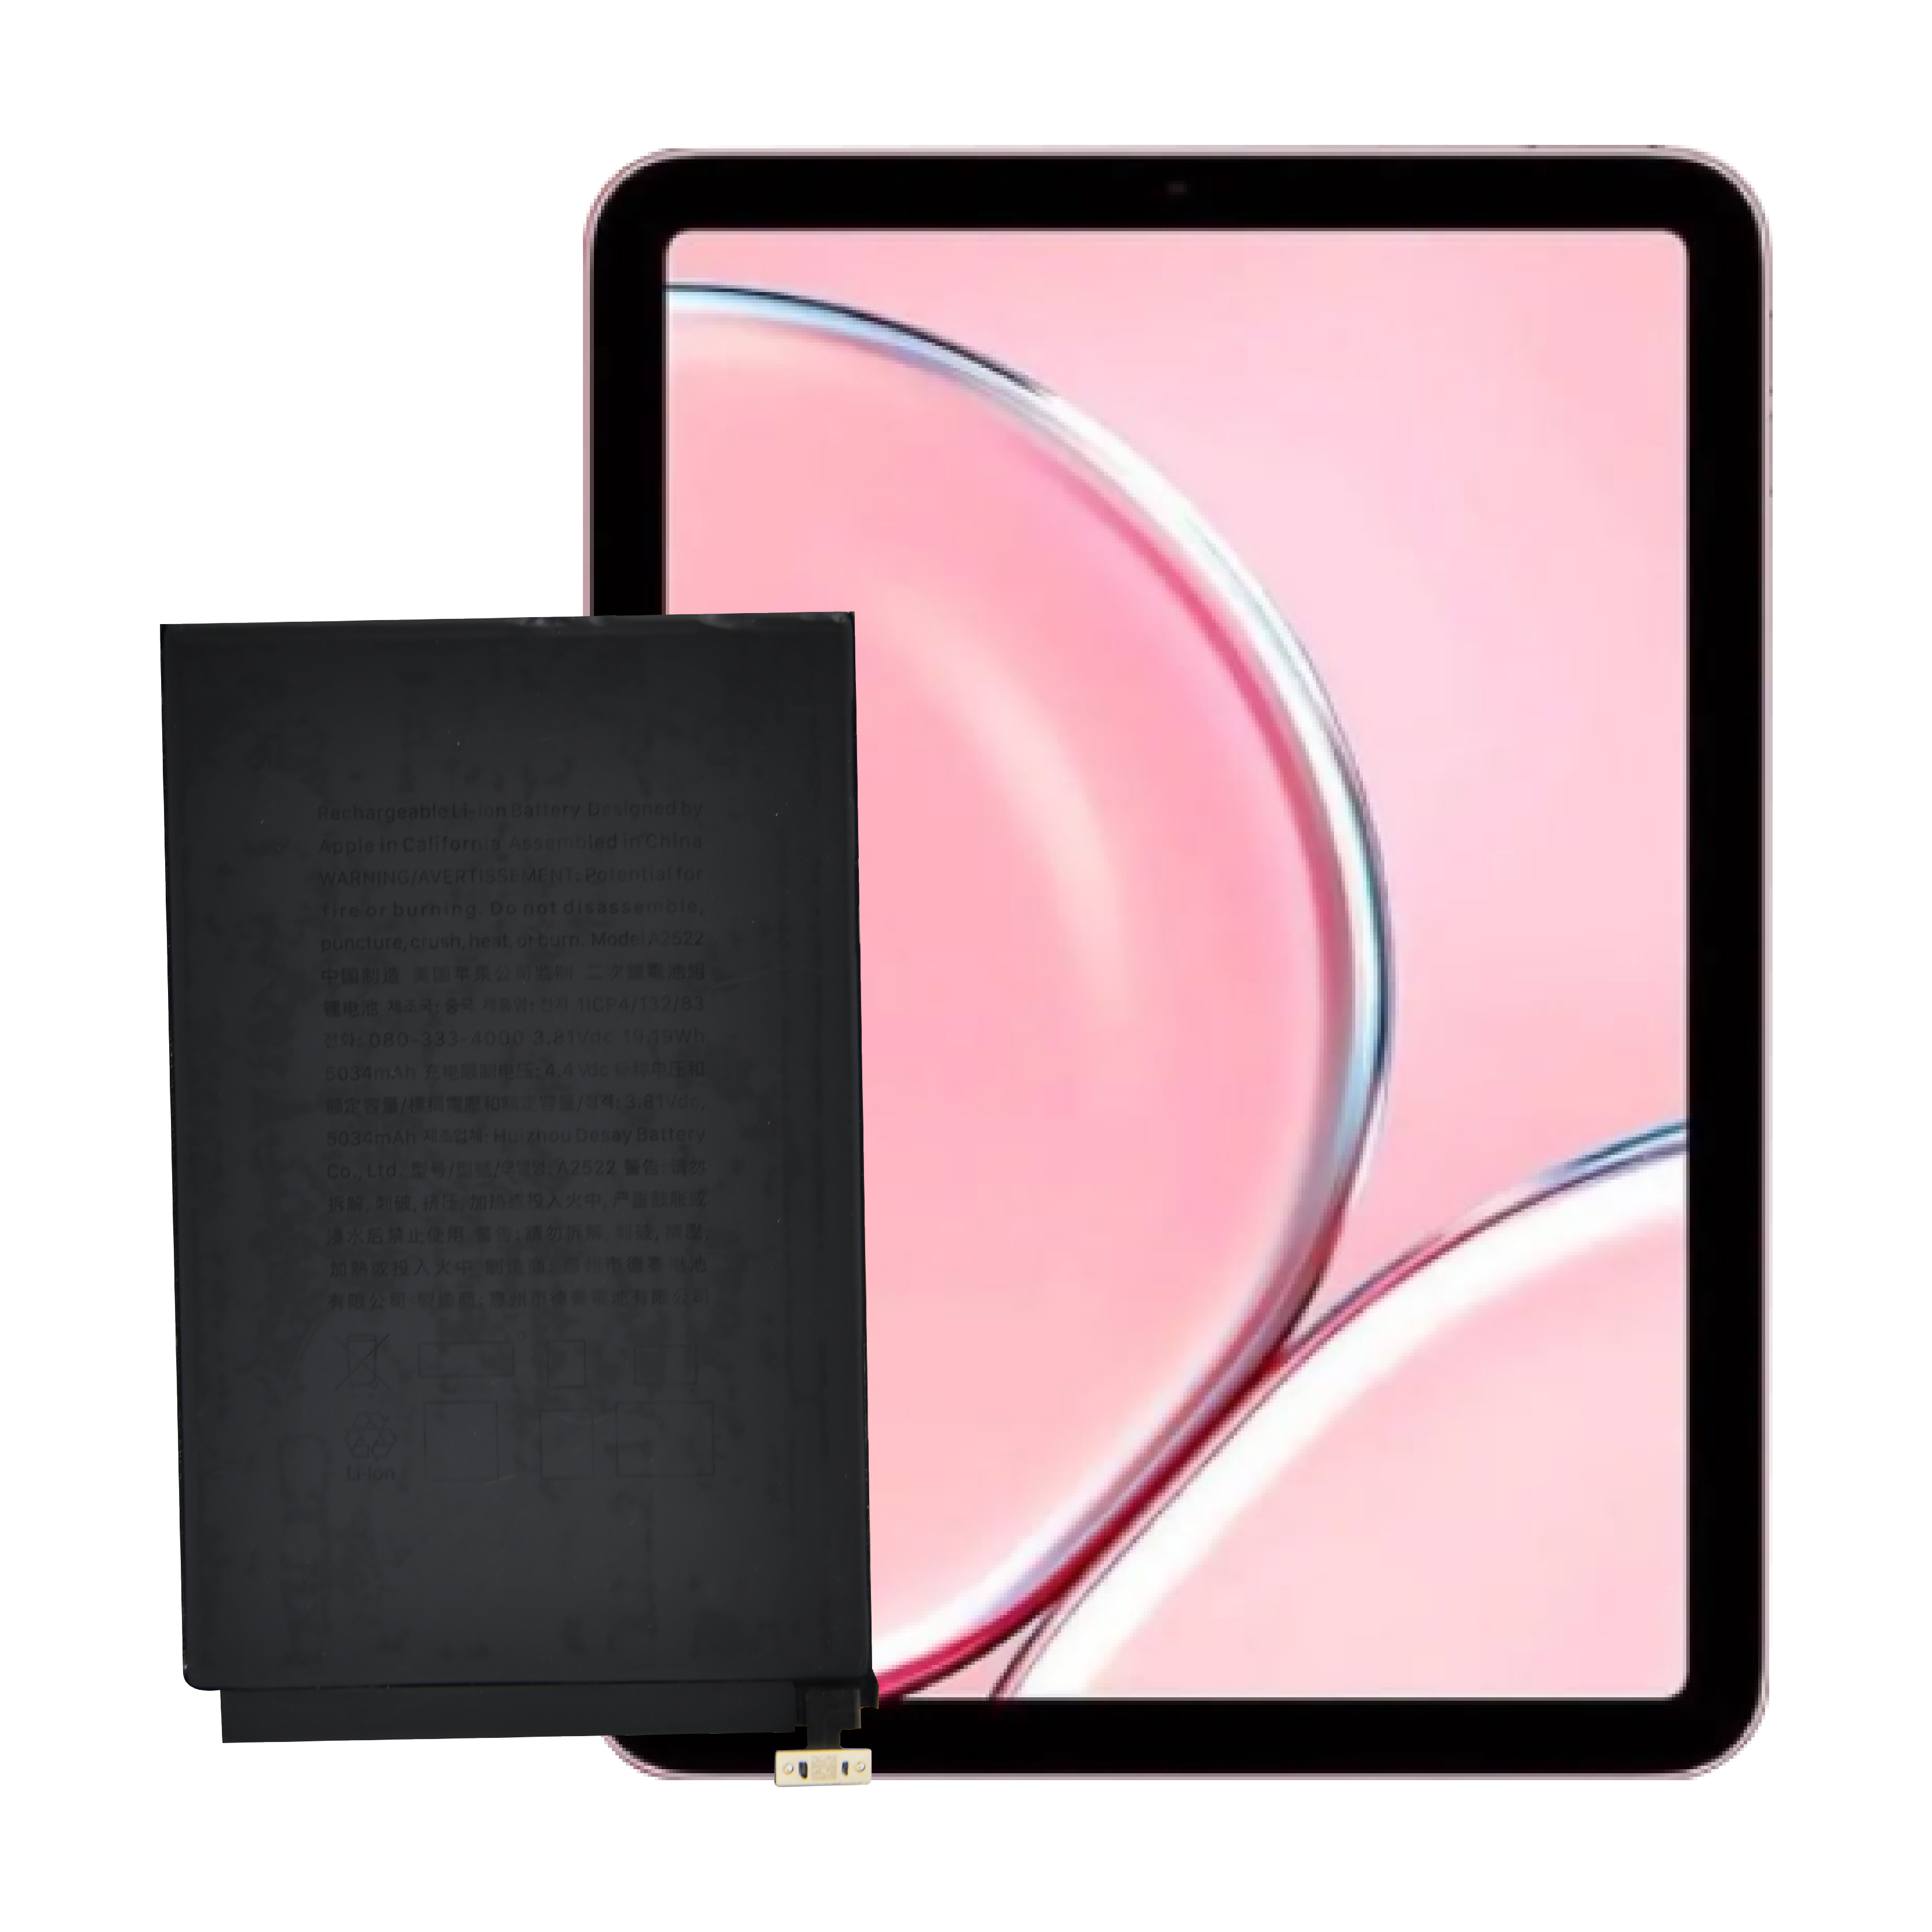 គុណភាពខ្ពស់ OEM ម៉ាកថ្មី 0 វដ្ត ថ្មកុំព្យូទ័របន្ទះខាងក្នុង សម្រាប់ថ្ម Apple iPad mini6